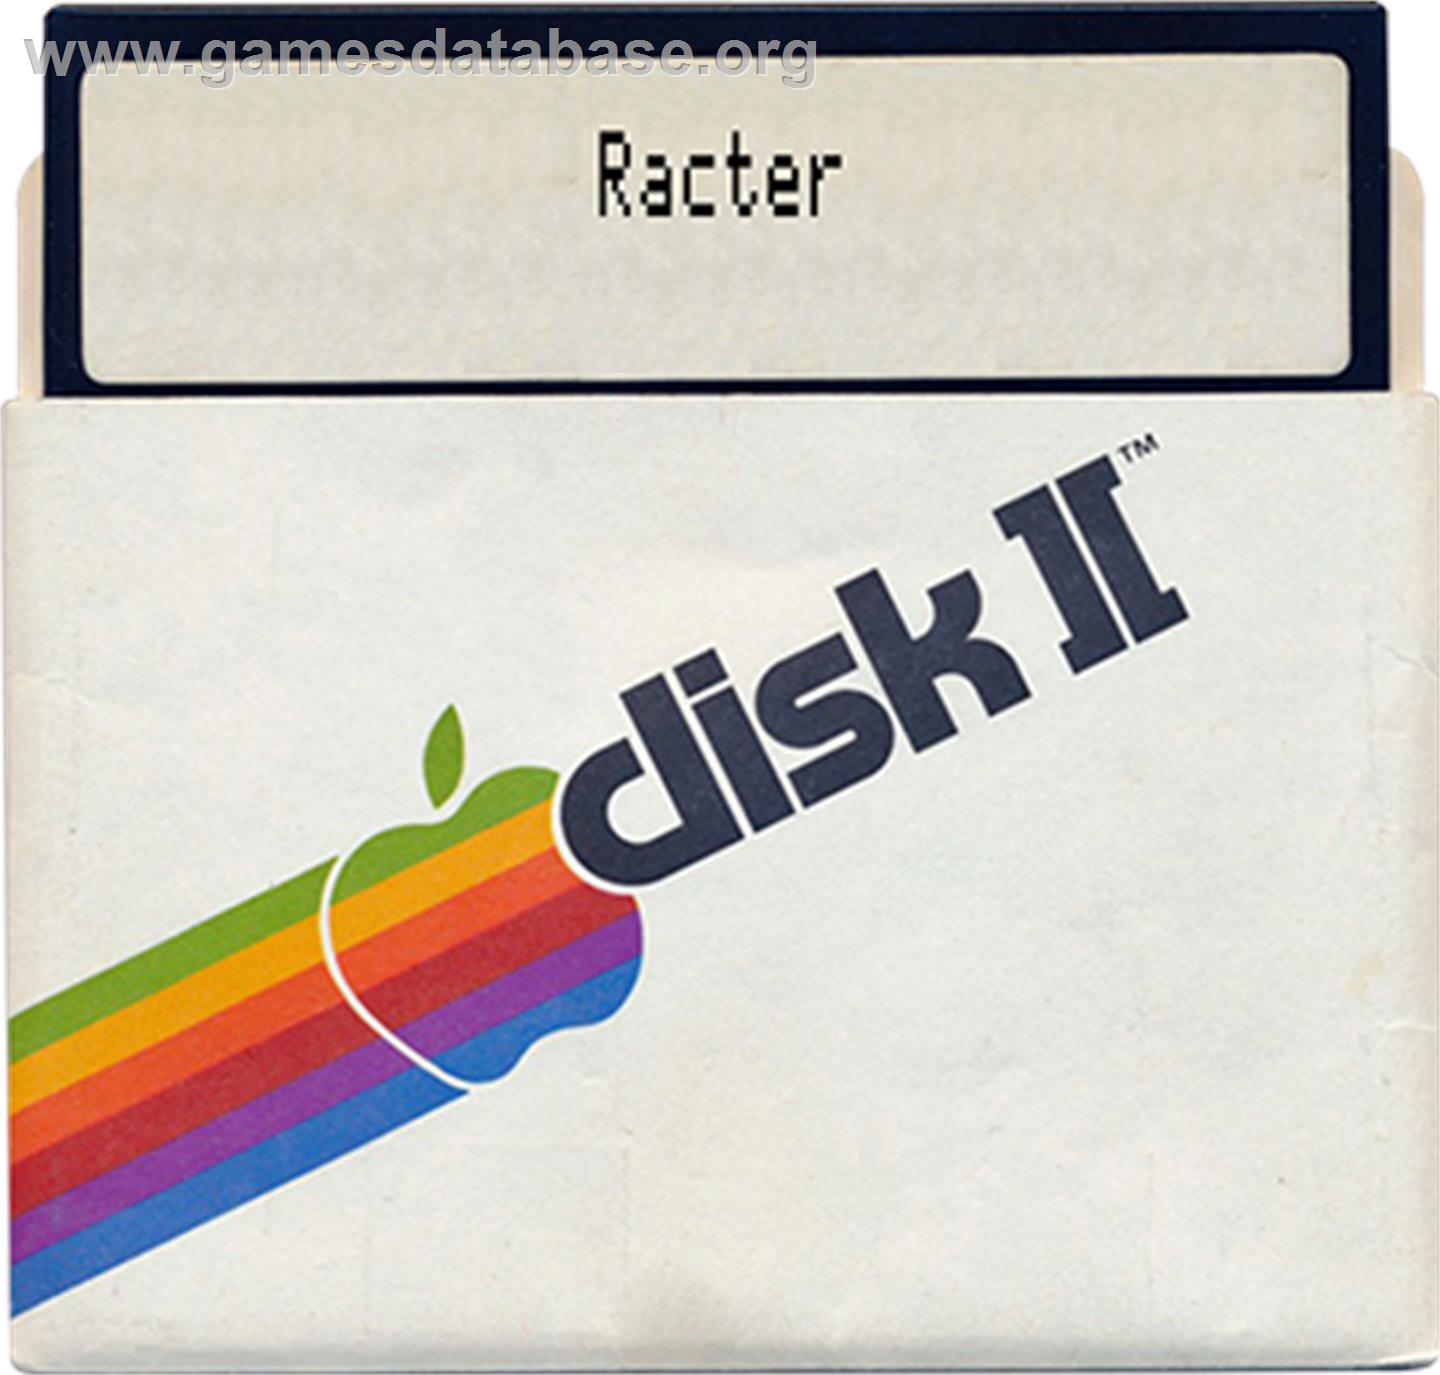 Racter - Apple II - Artwork - Disc